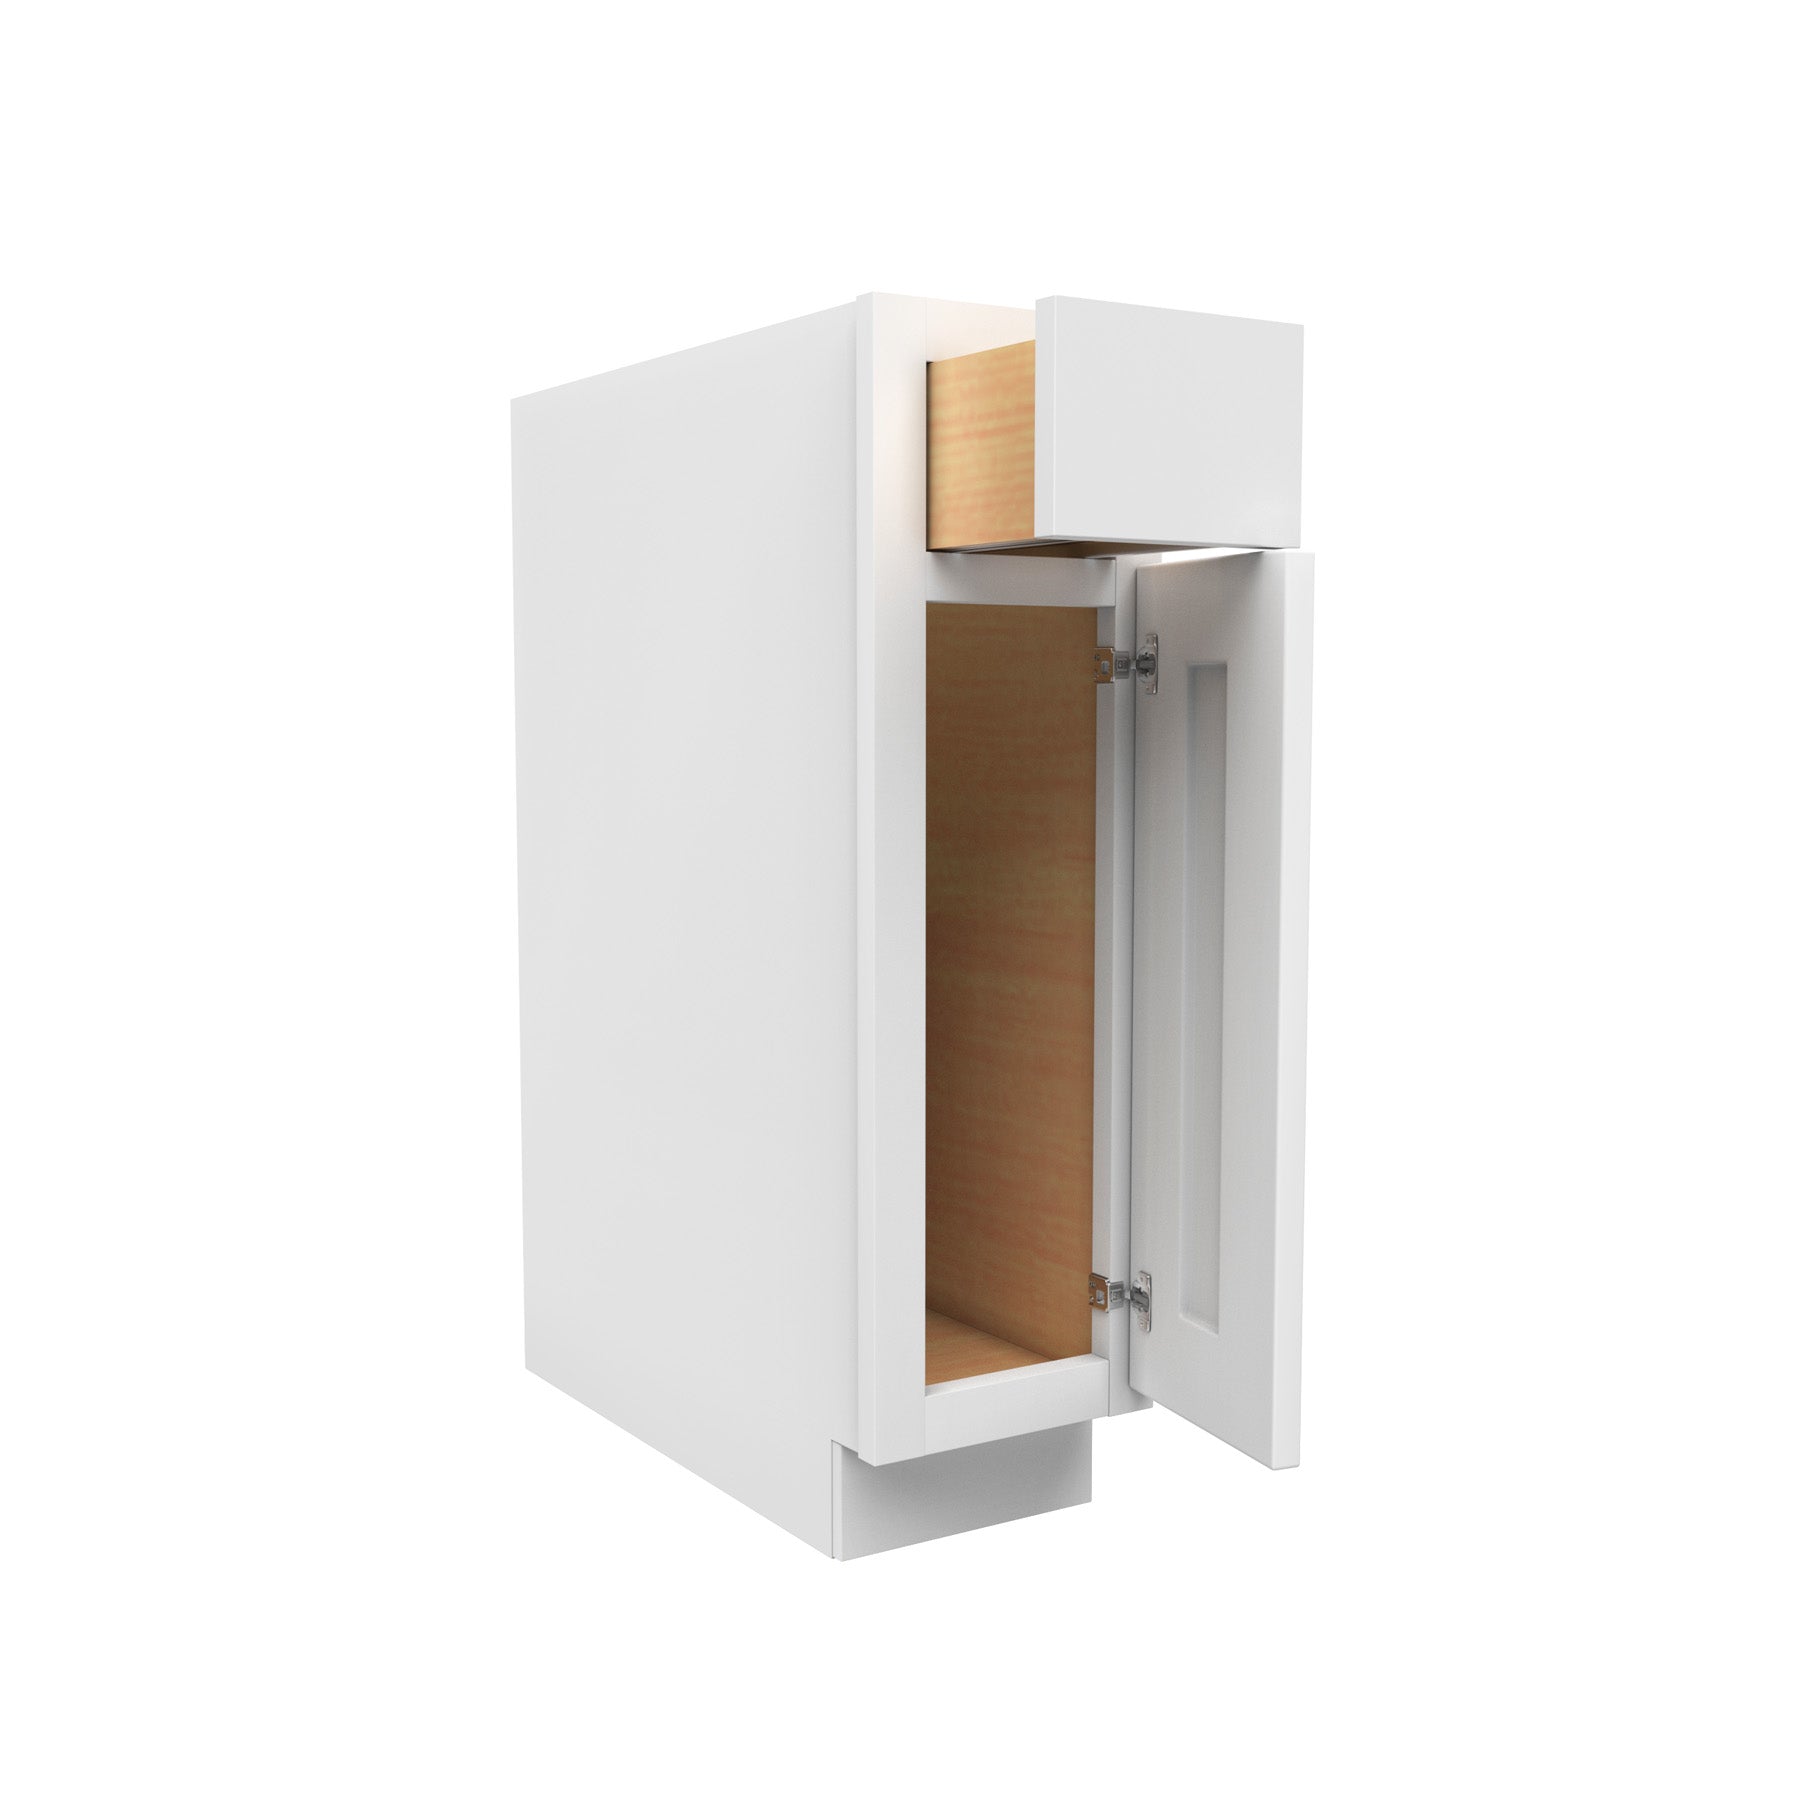 Luxor Espresso - Double Door Base Cabinet | 42W x 34.5H x 24D